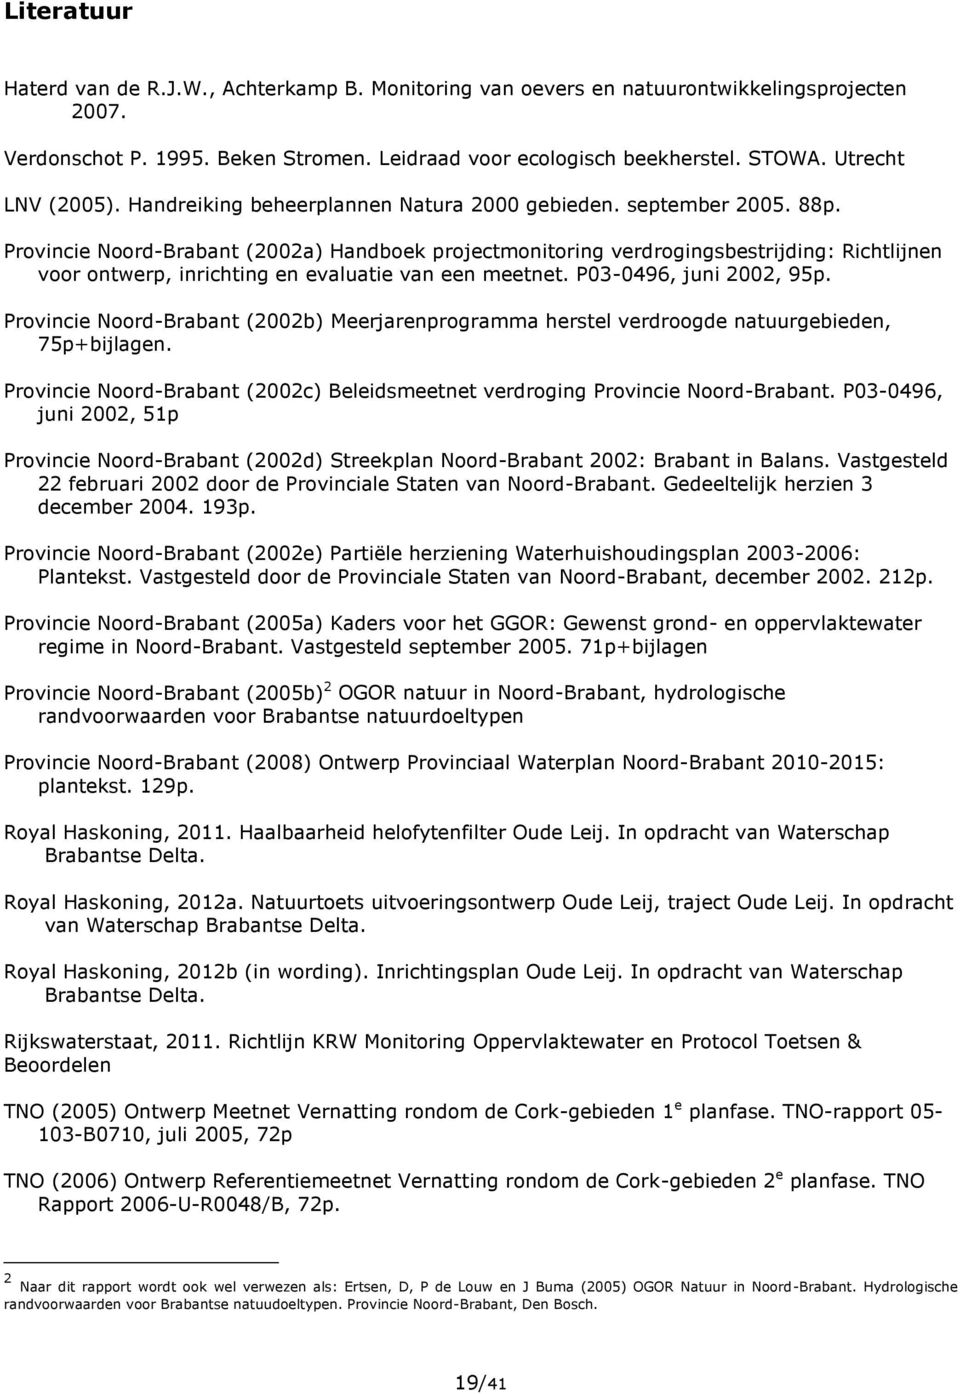 Provincie Noord-Brabant (2002a) Handboek projectmonitoring verdrogingsbestrijding: Richtlijnen voor ontwerp, inrichting en evaluatie van een meetnet. P03-0496, juni 2002, 95p.